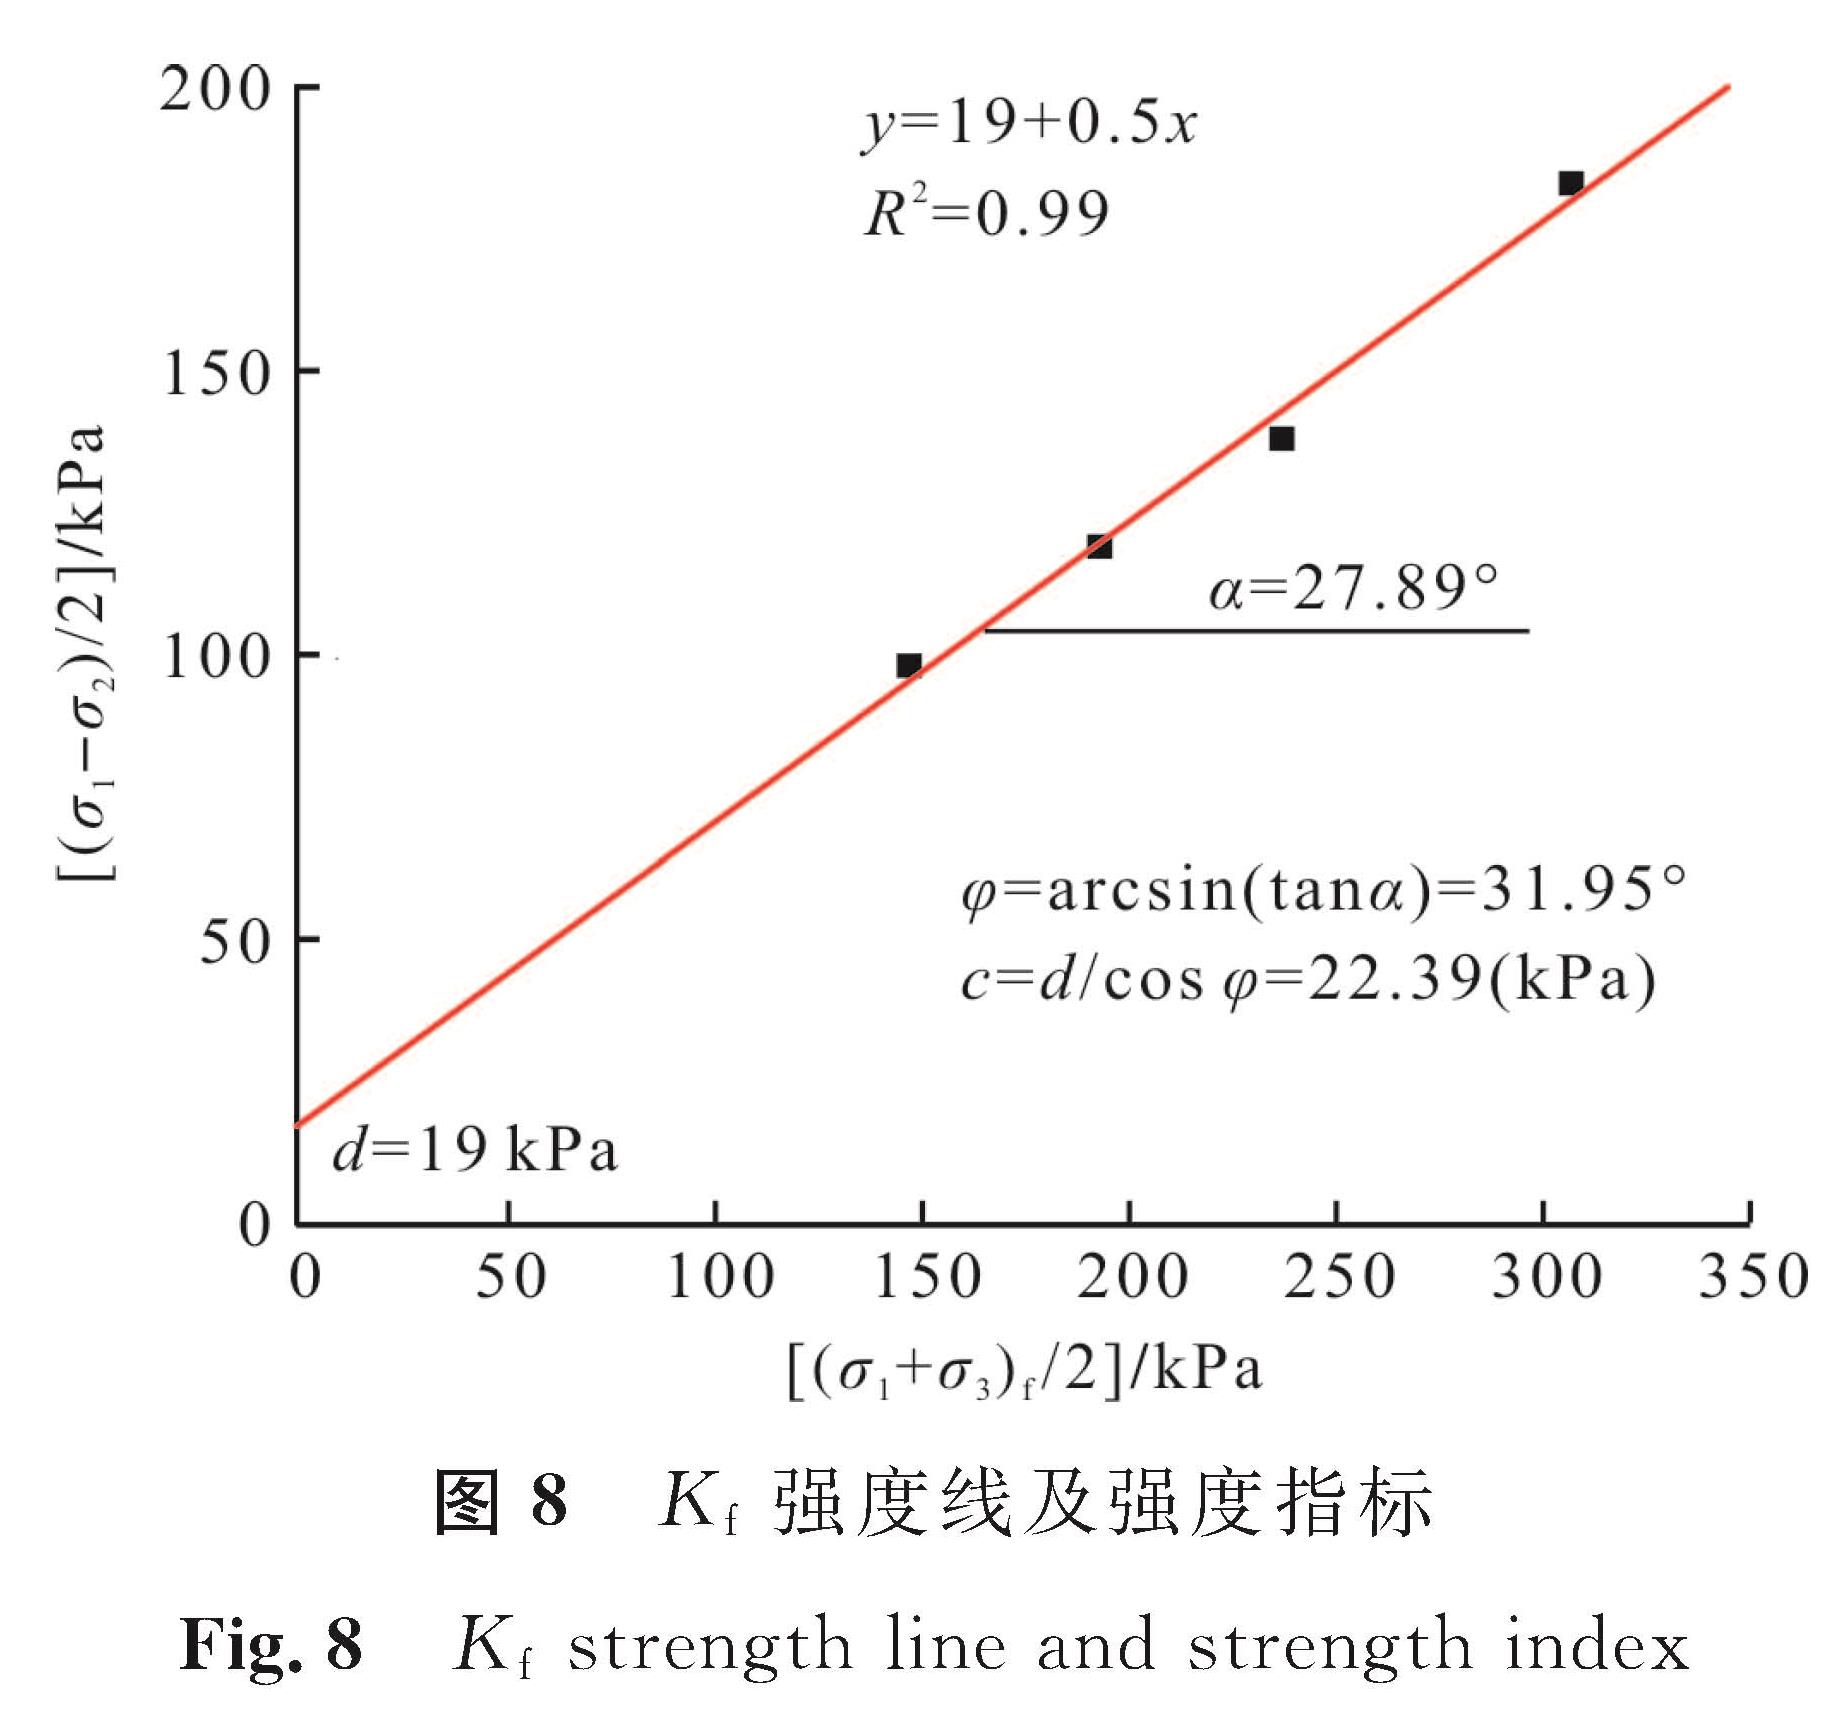 图8 Kf强度线及强度指标<br/>Fig.8 Kf strength line and strength index